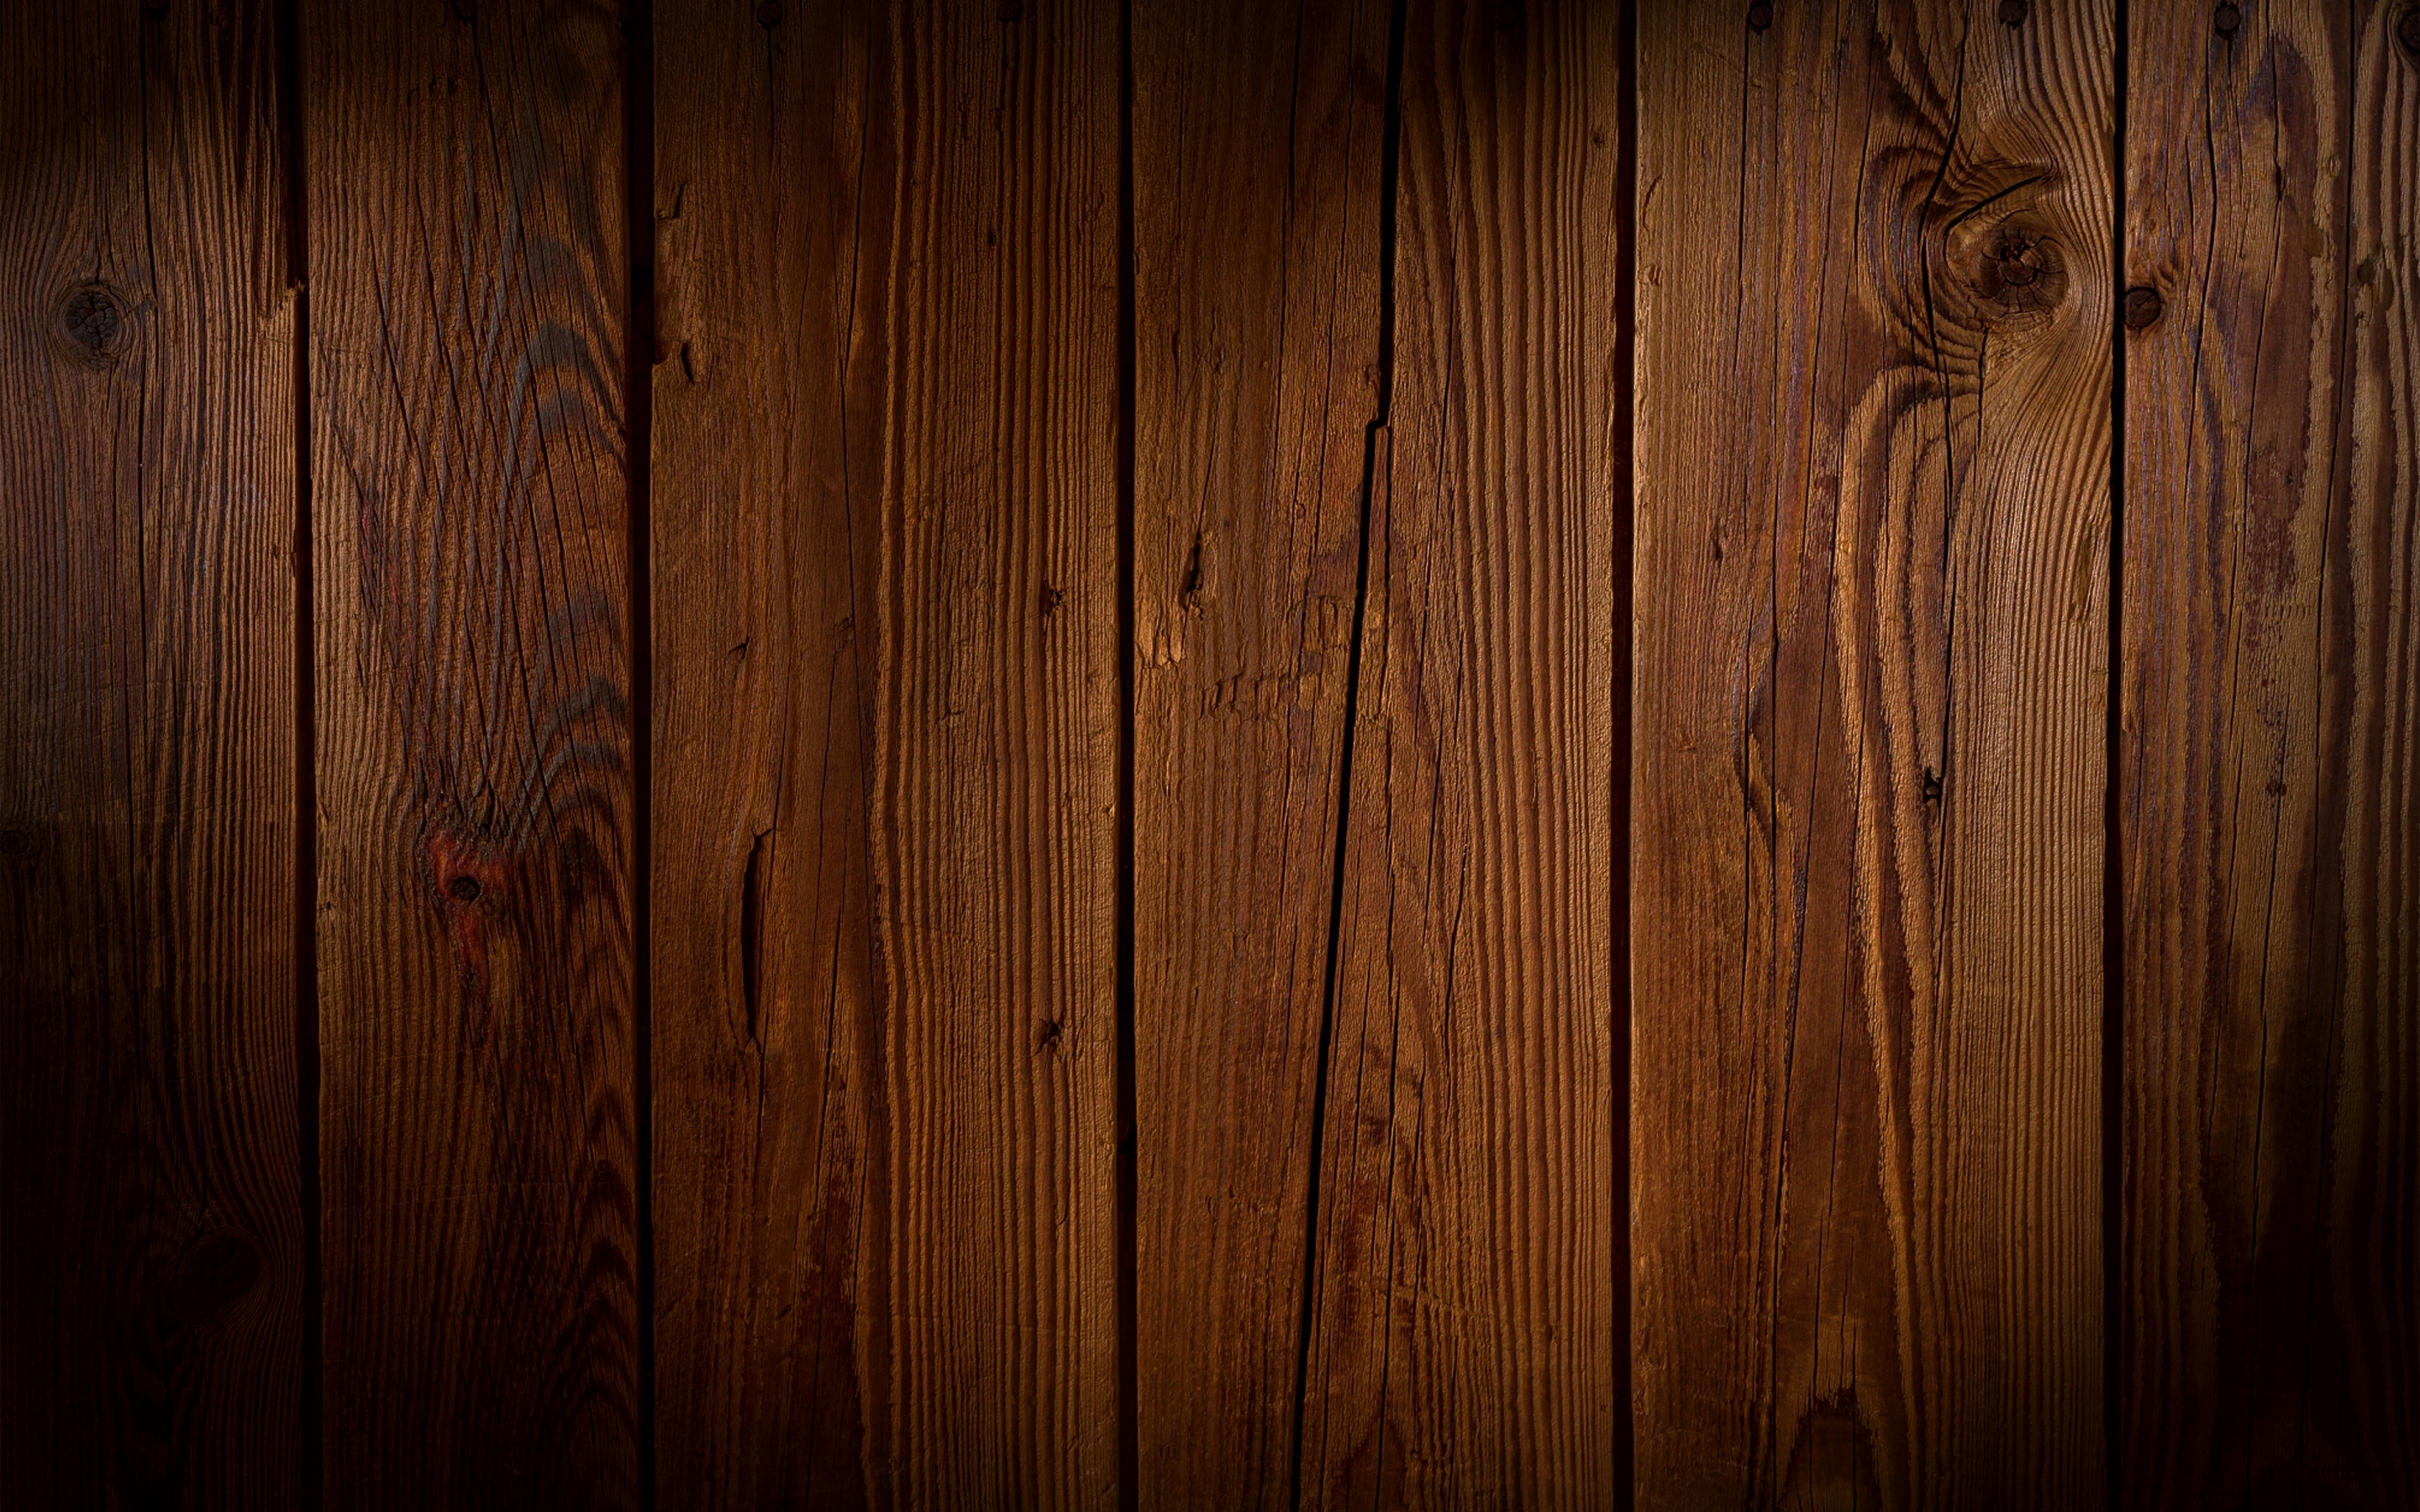 Nền gỗ tạo nên một không gian đầm ấm và ấn tượng cho các sản phẩm nội thất. Hình ảnh về nền gỗ sẽ giúp bạn hiểu rõ hơn về cách sử dụng và tạo ra sự kết hợp hài hòa với các vật liệu khác.